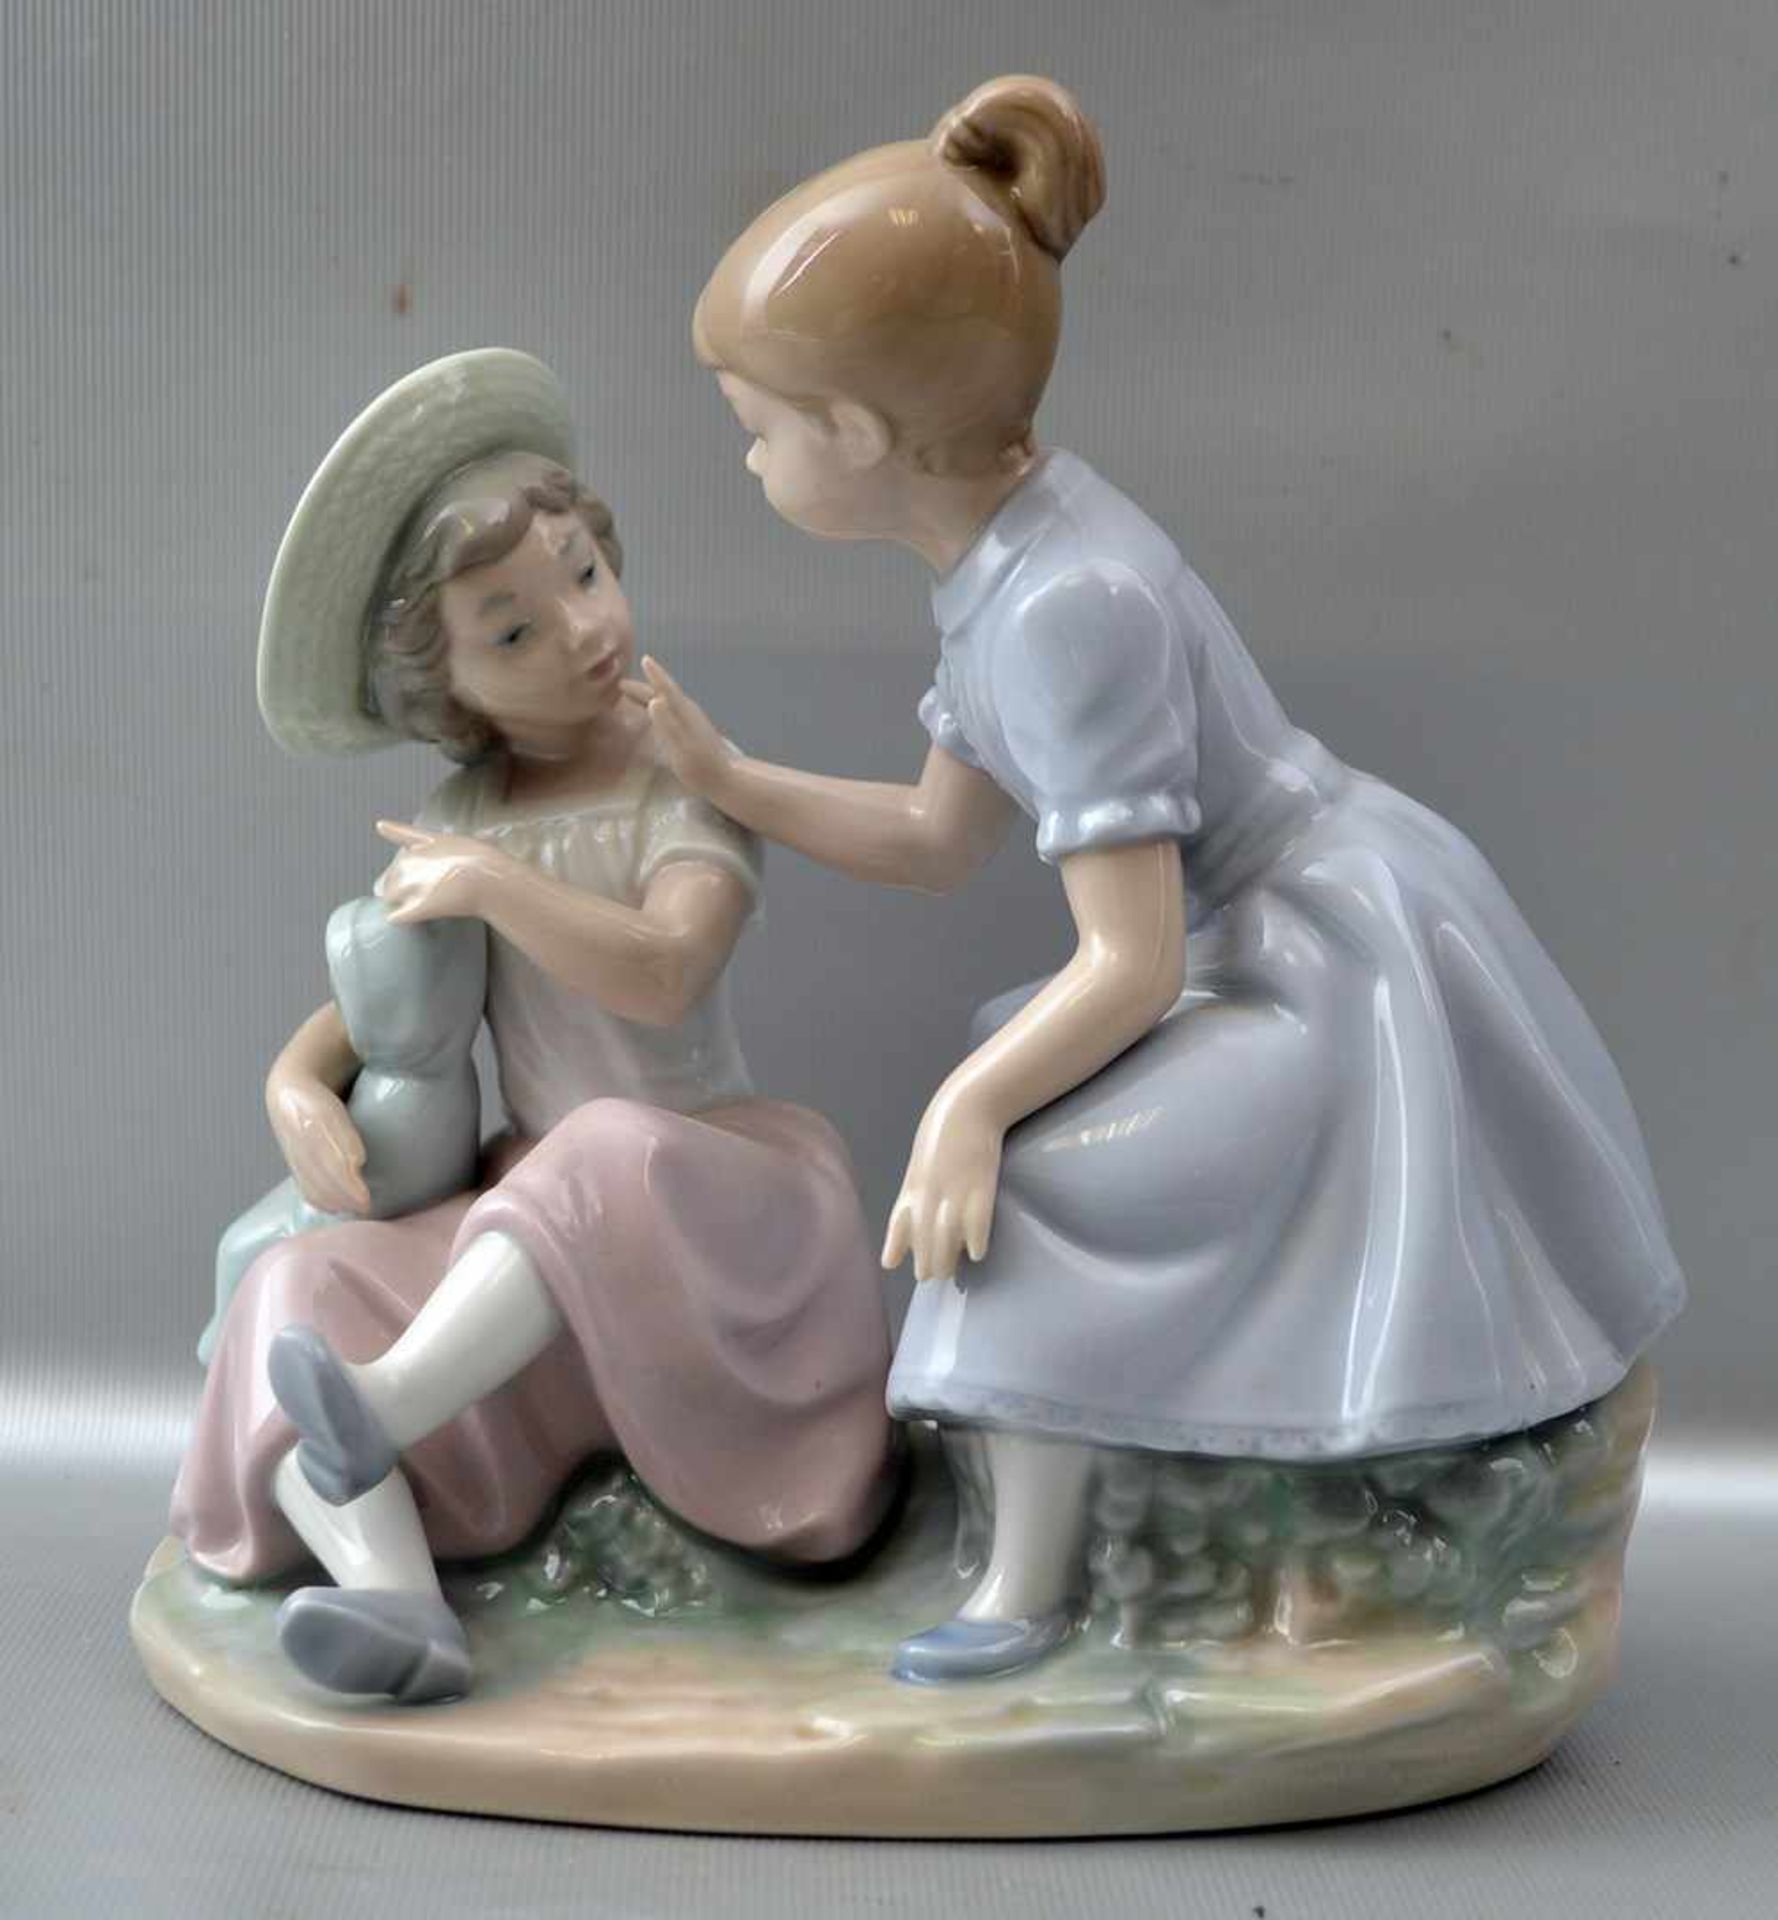 Zwei spielende Mädchen auf Steinsockel sitzend, mit Puppe, bunt bemalt, H 18 cm, B 18 cm, FM Lladro